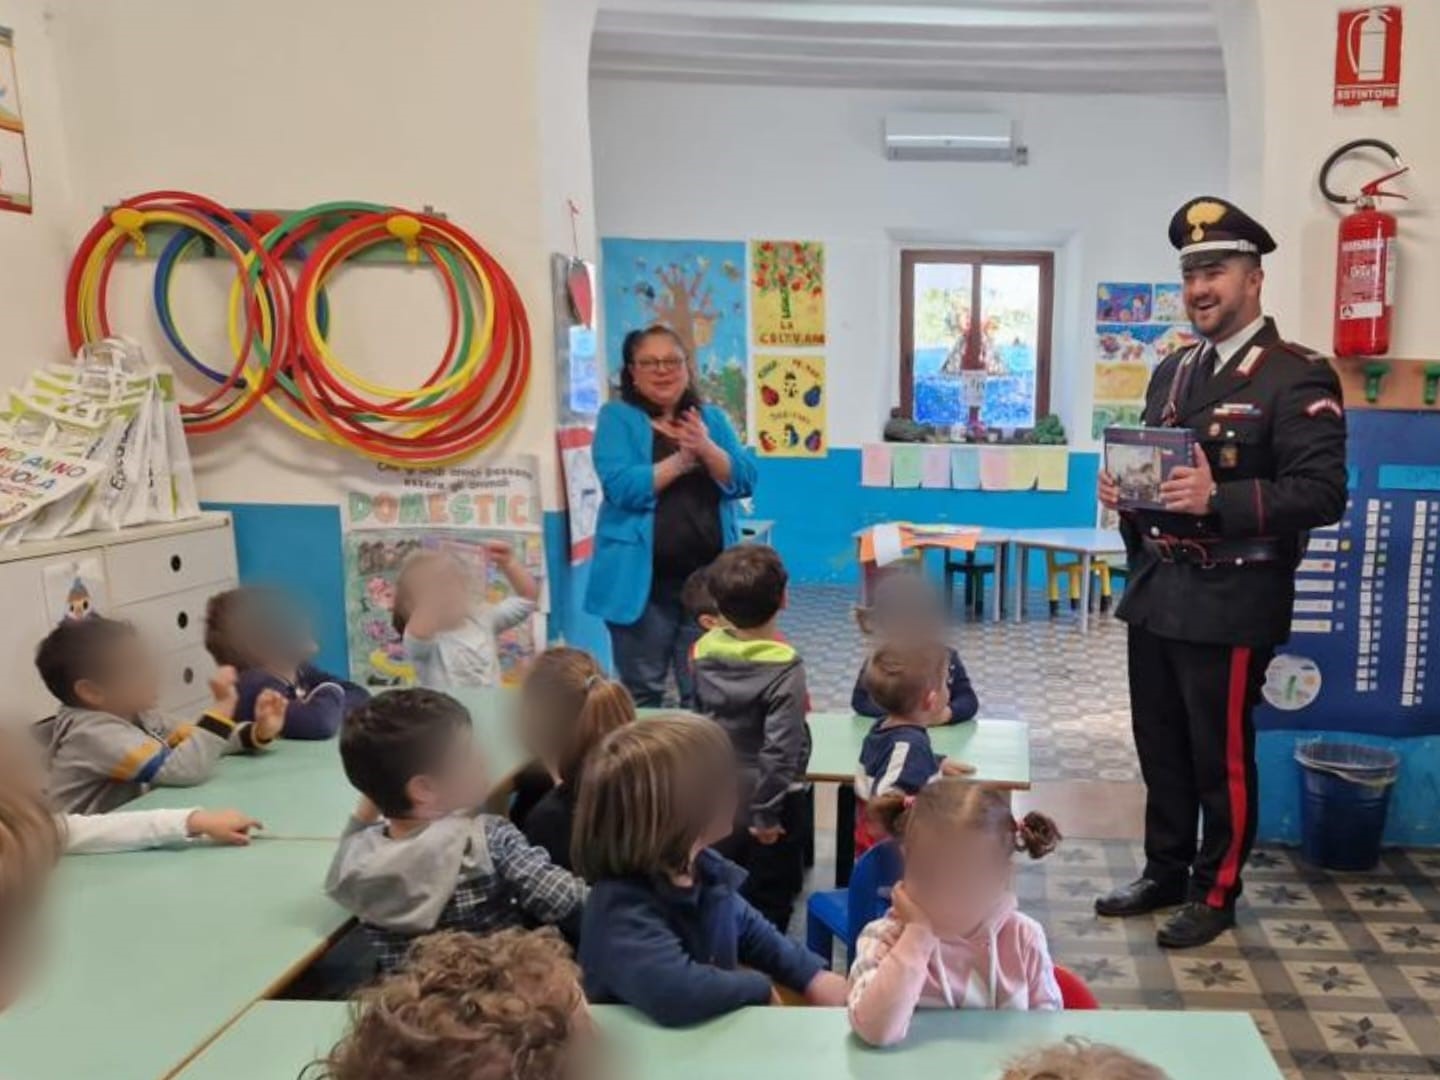 stromboli-:-i-carabinieri-donano-regali-e-uova-di-pasqua-ai-bambini-della-scuola